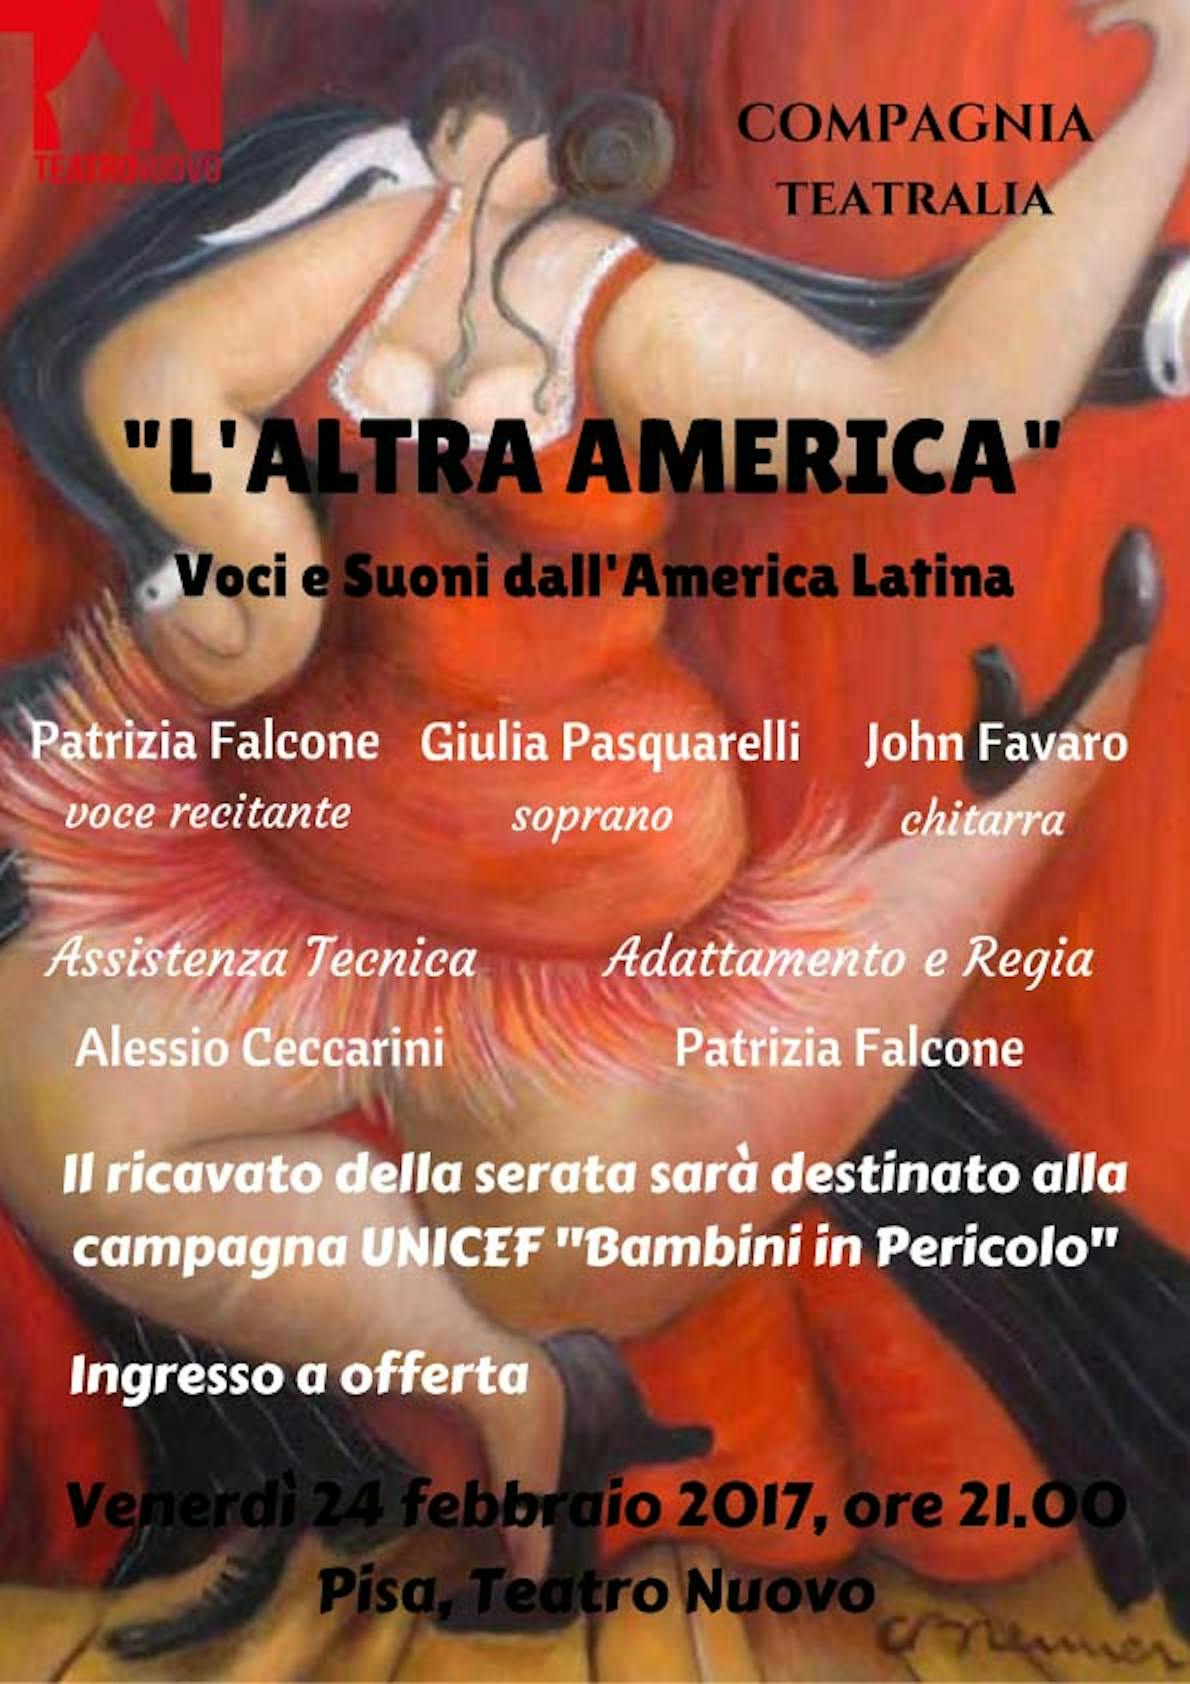 L'altra America, voci e suoni dall'America Latina. Al Teatro Nuovo di Pisa lo spettacolo a sostegno della campagna UNICEF per i Bambini in Pericolo